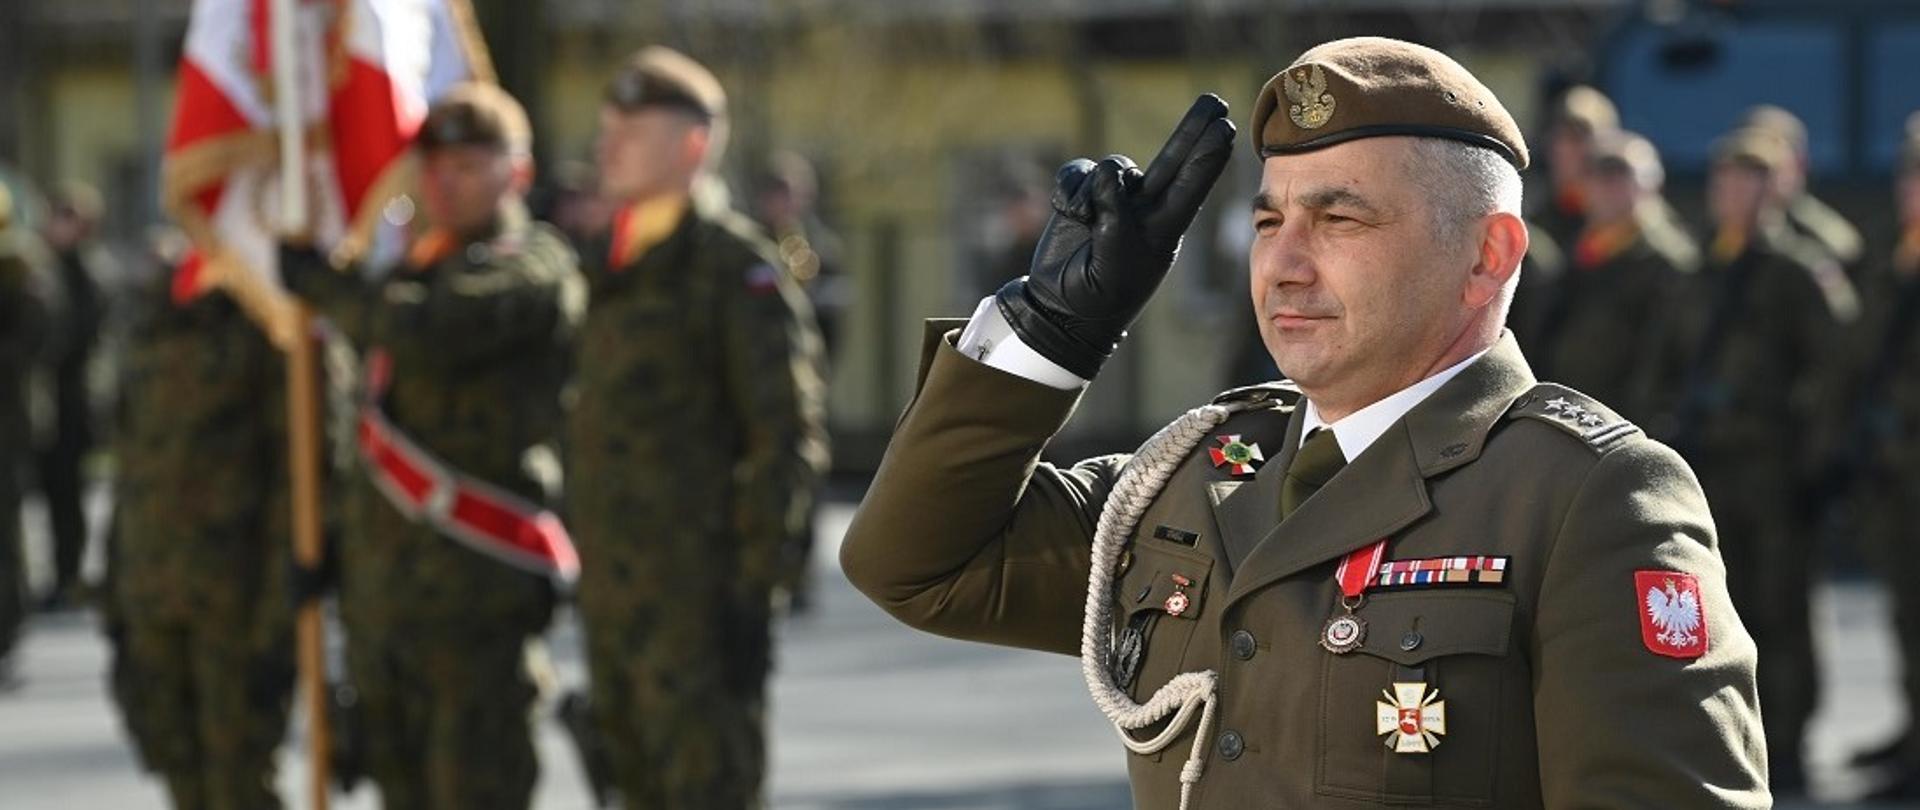 Pułkownik Sławomir Miazga salutuje w trakcie uroczystości 